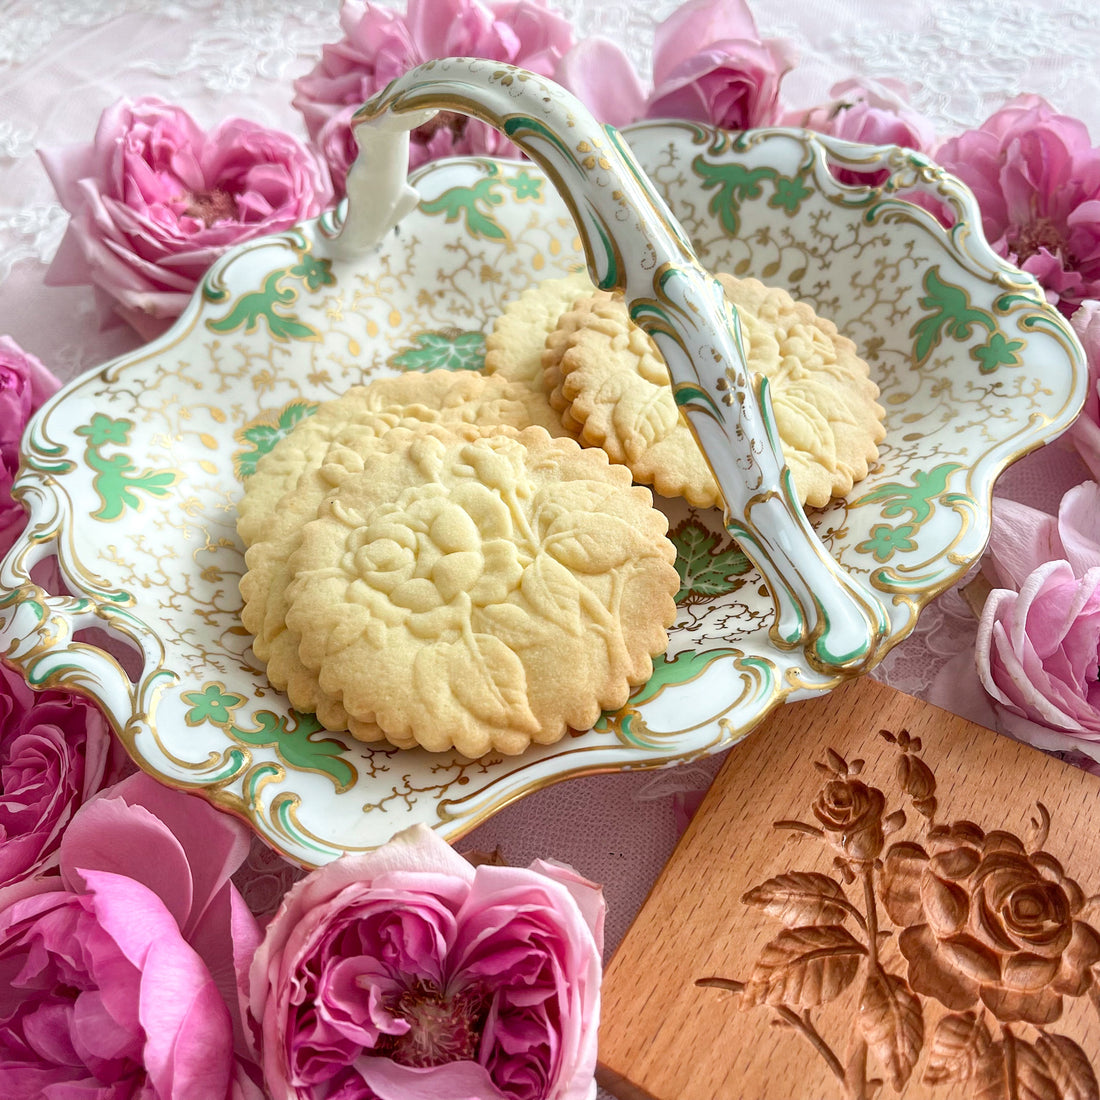 英国アンティークと手作りお菓子のお話1 Rose Antiques